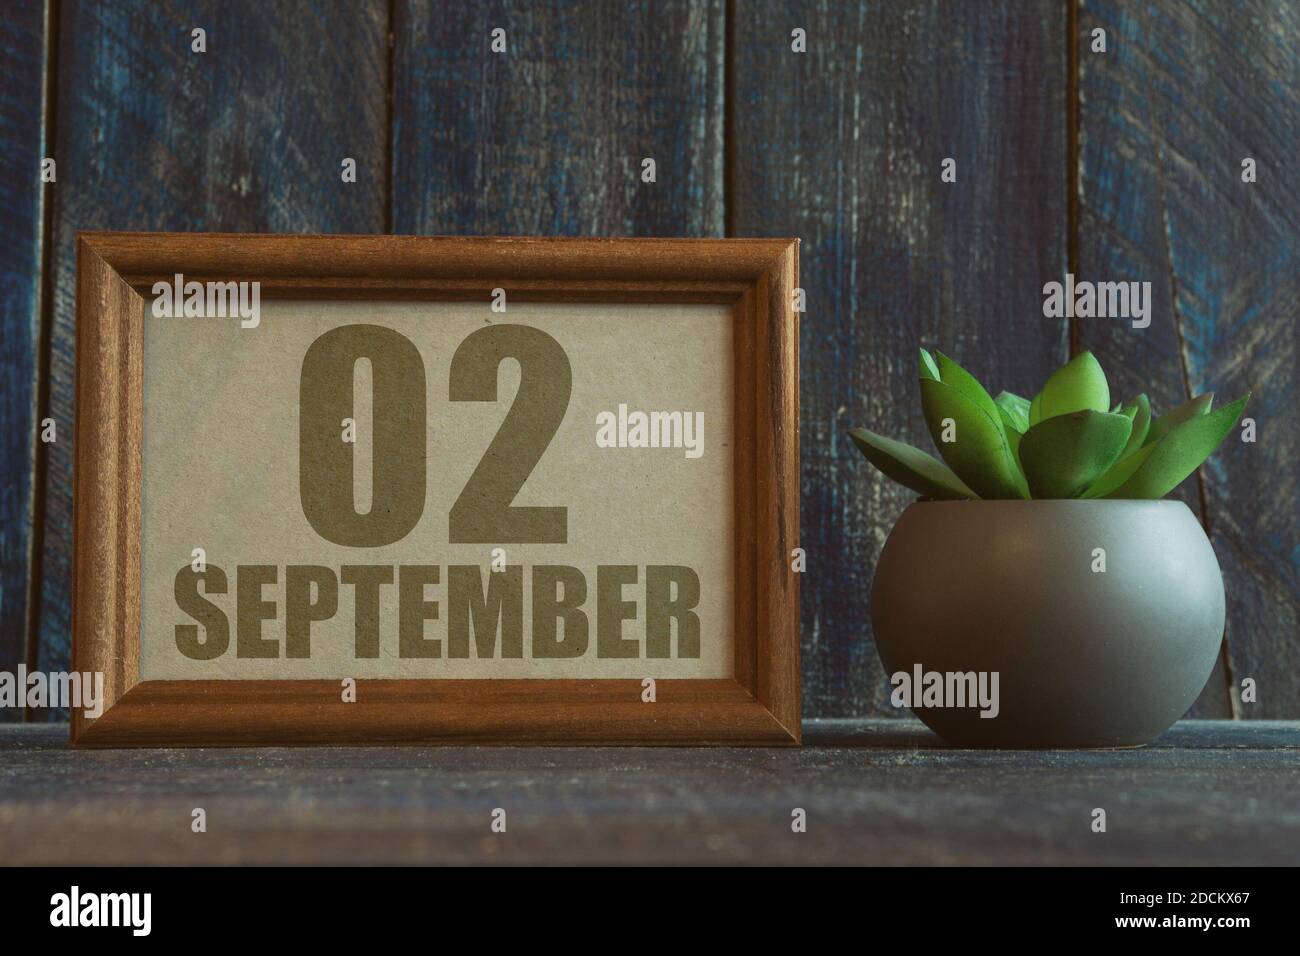 2 septembre. Jour 2 du mois, date dans le cadre à côté de succulent sur fond de bois automne mois, jour de l'année concept Banque D'Images